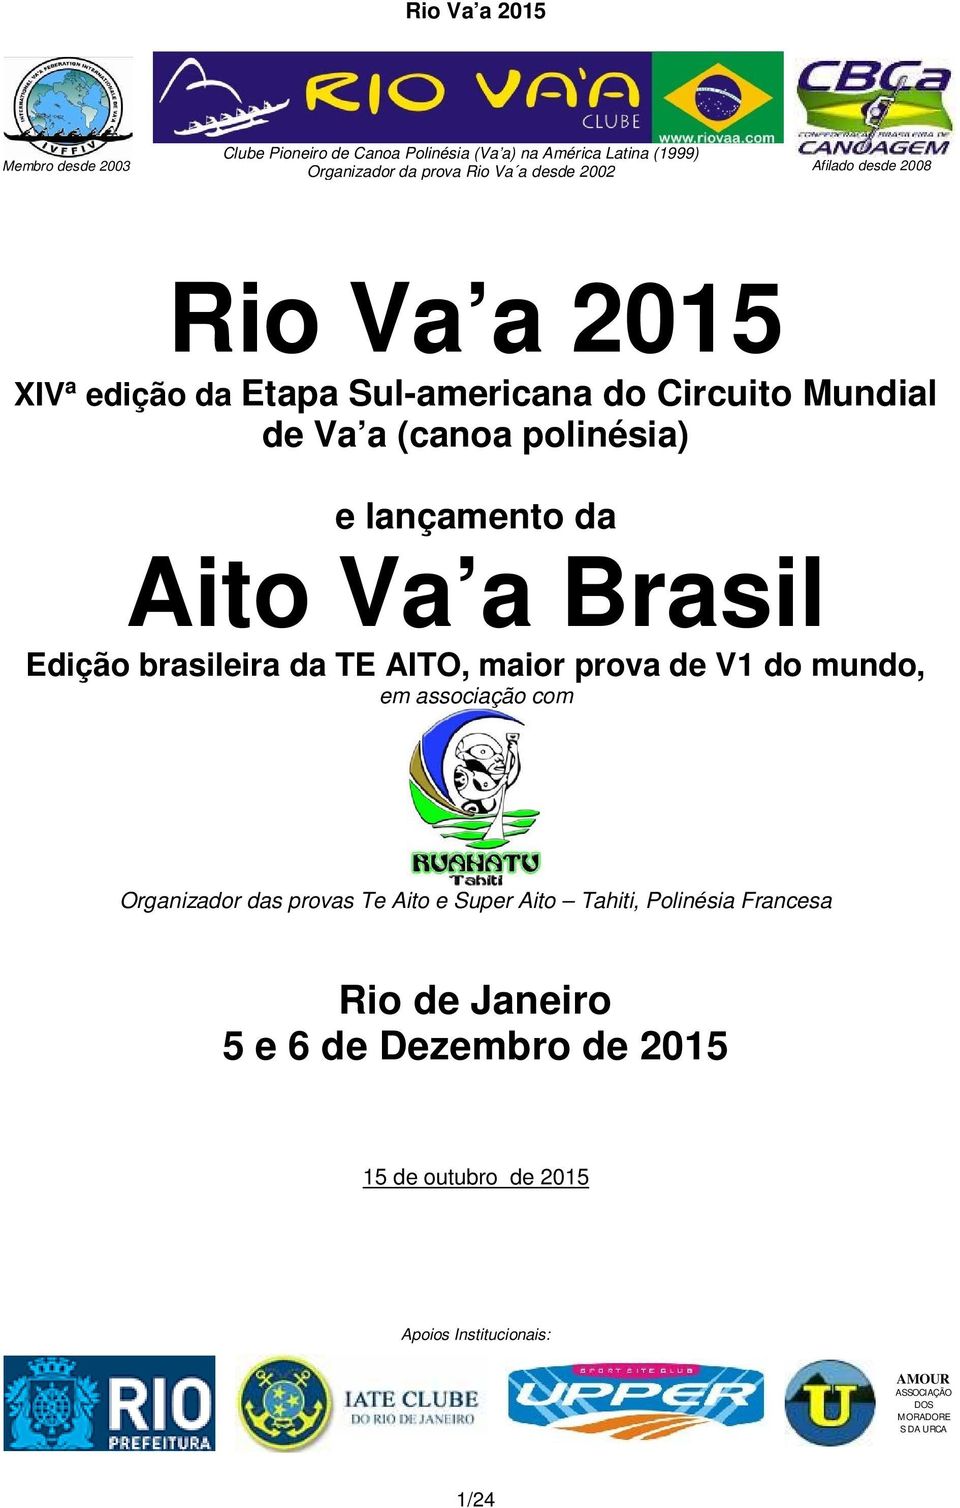 Brasil Edição brasileira da TE AITO, maior prova de V1 do mundo, em associação com Organizador das provas Te Aito e Super Aito Tahiti,